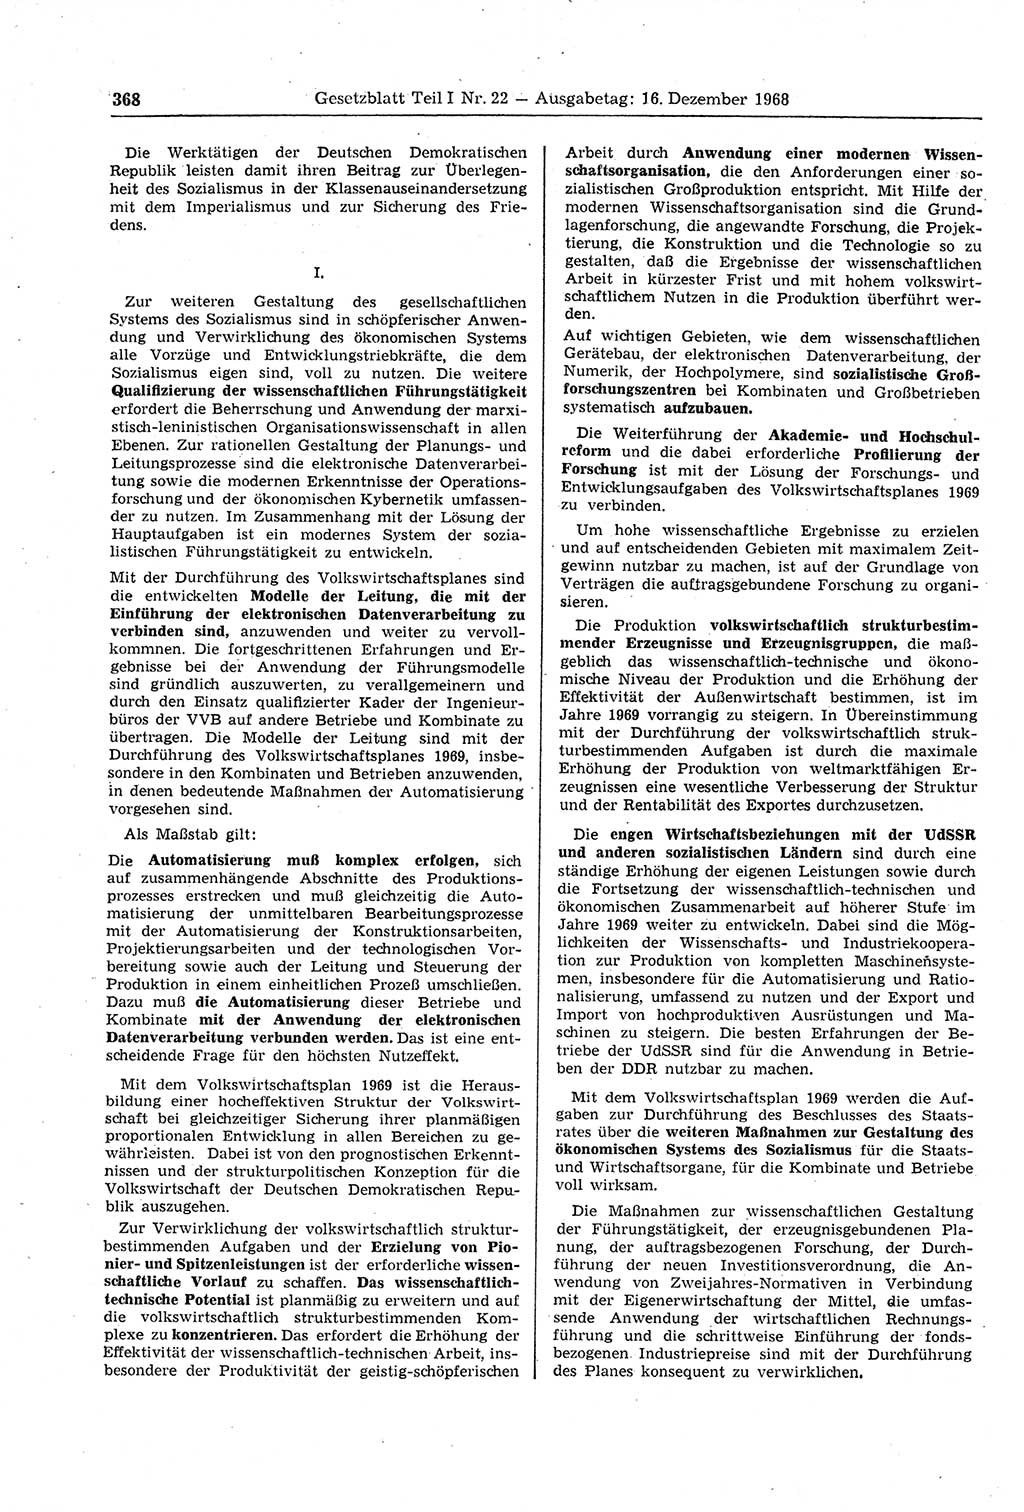 Gesetzblatt (GBl.) der Deutschen Demokratischen Republik (DDR) Teil Ⅰ 1968, Seite 368 (GBl. DDR Ⅰ 1968, S. 368)